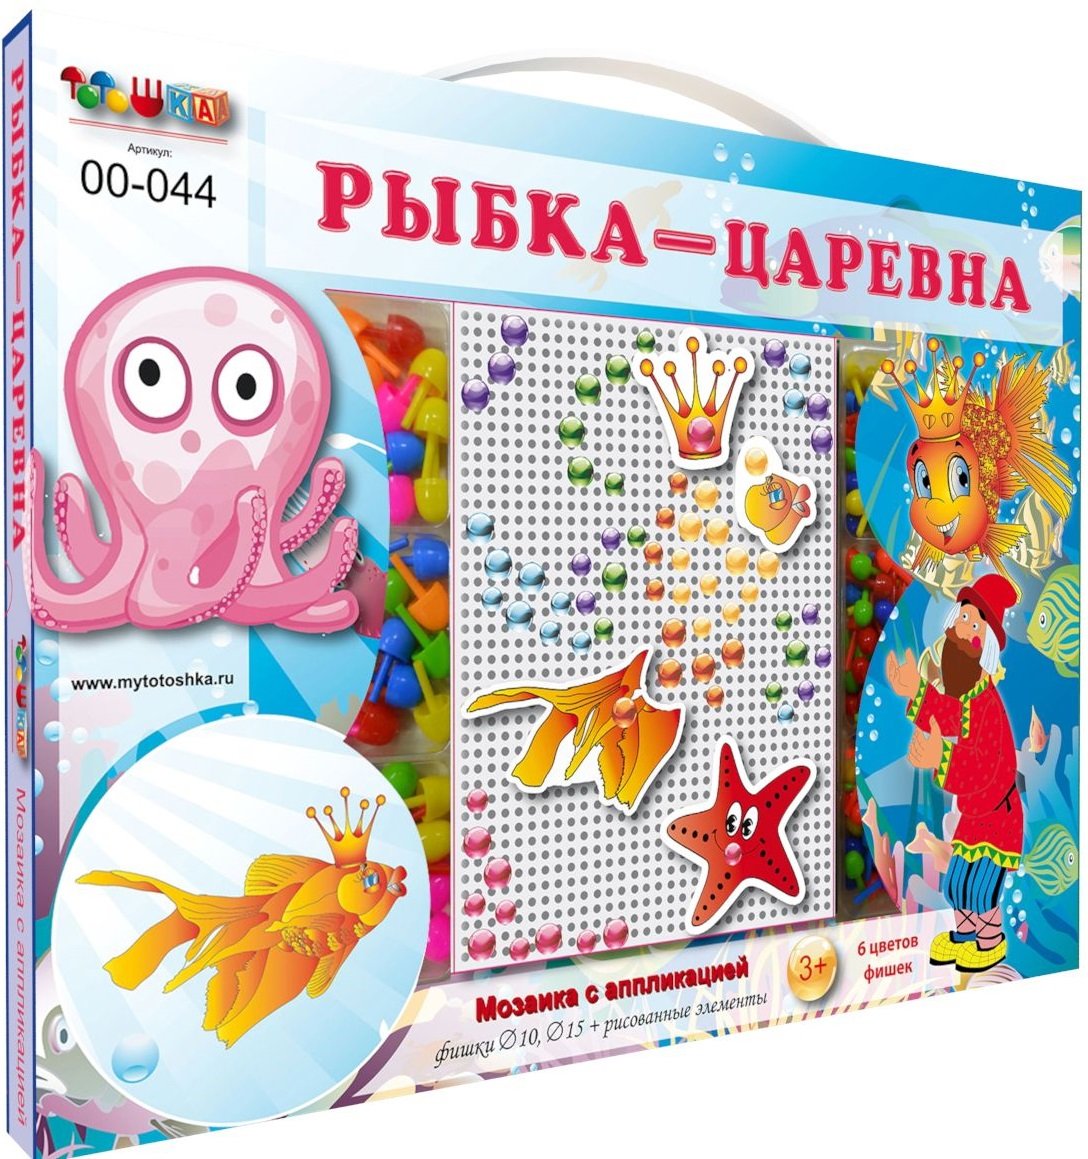 Детская мозаика с аппликациями Рыбка-царевна 00-044 Тойс-Юнион тото